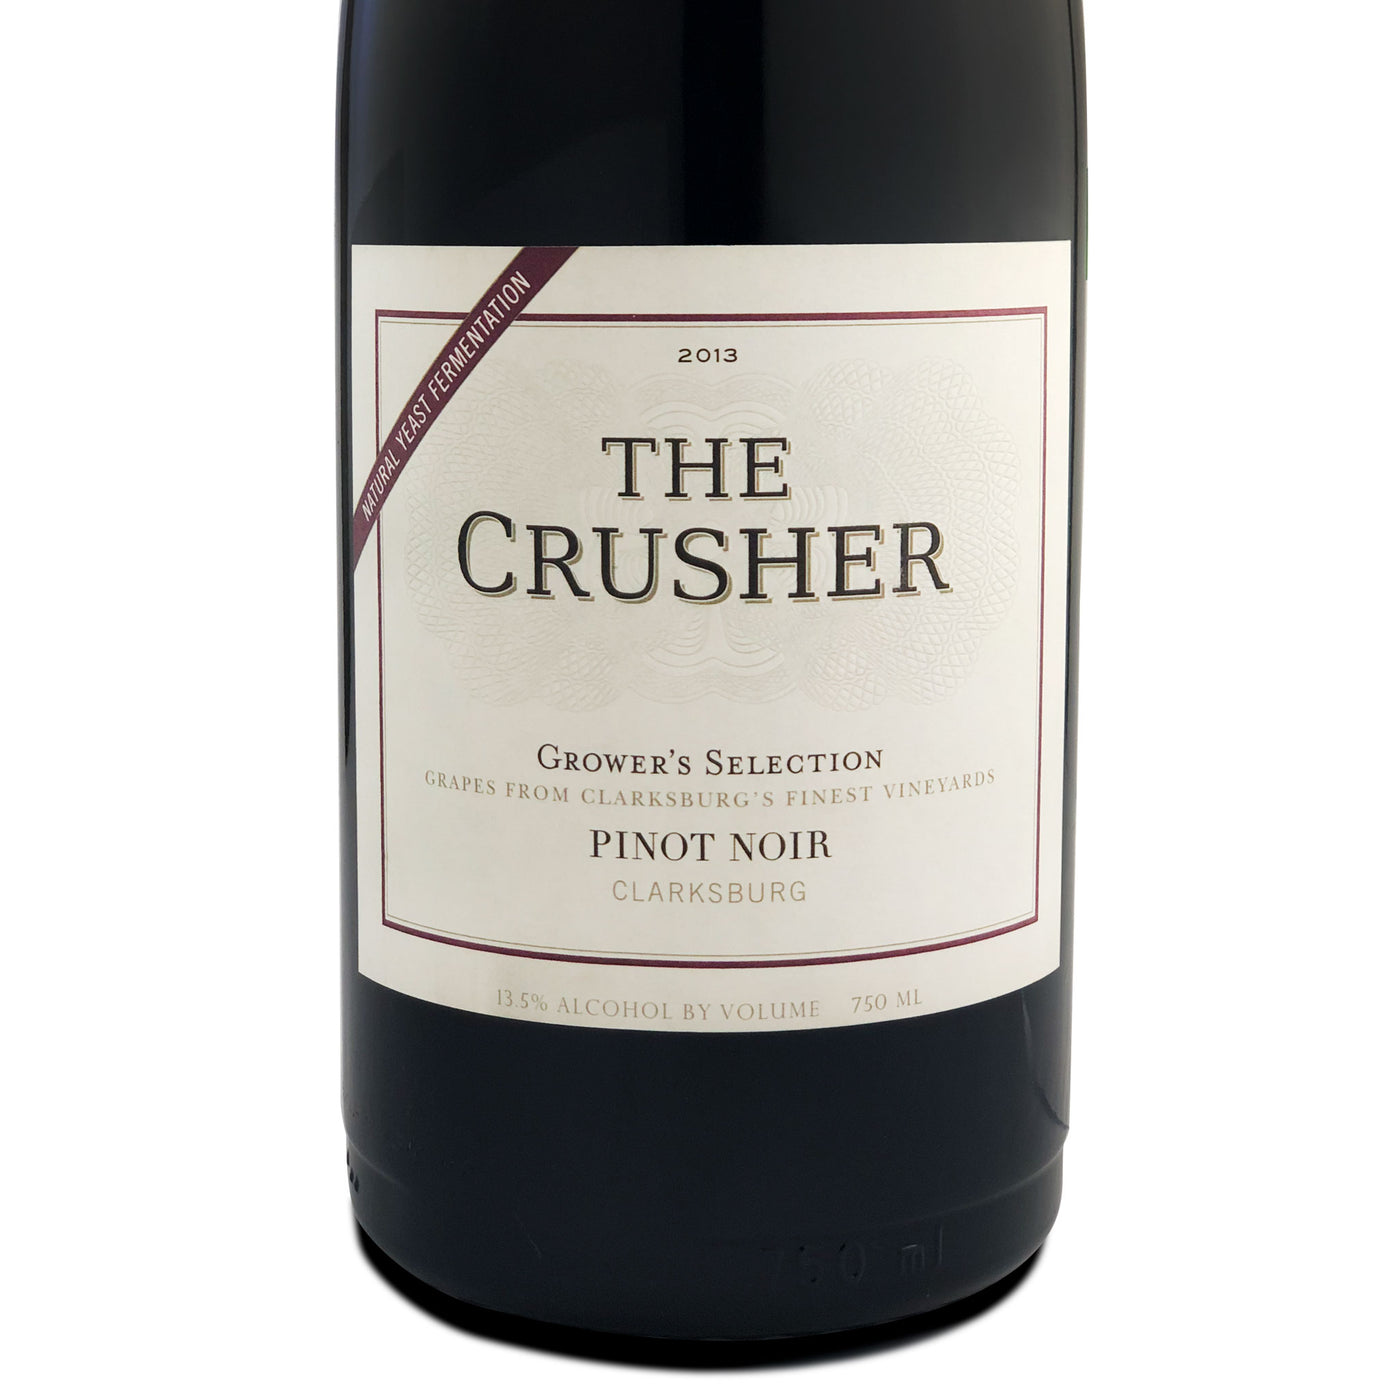 The Crusher Pinot Noir 2013